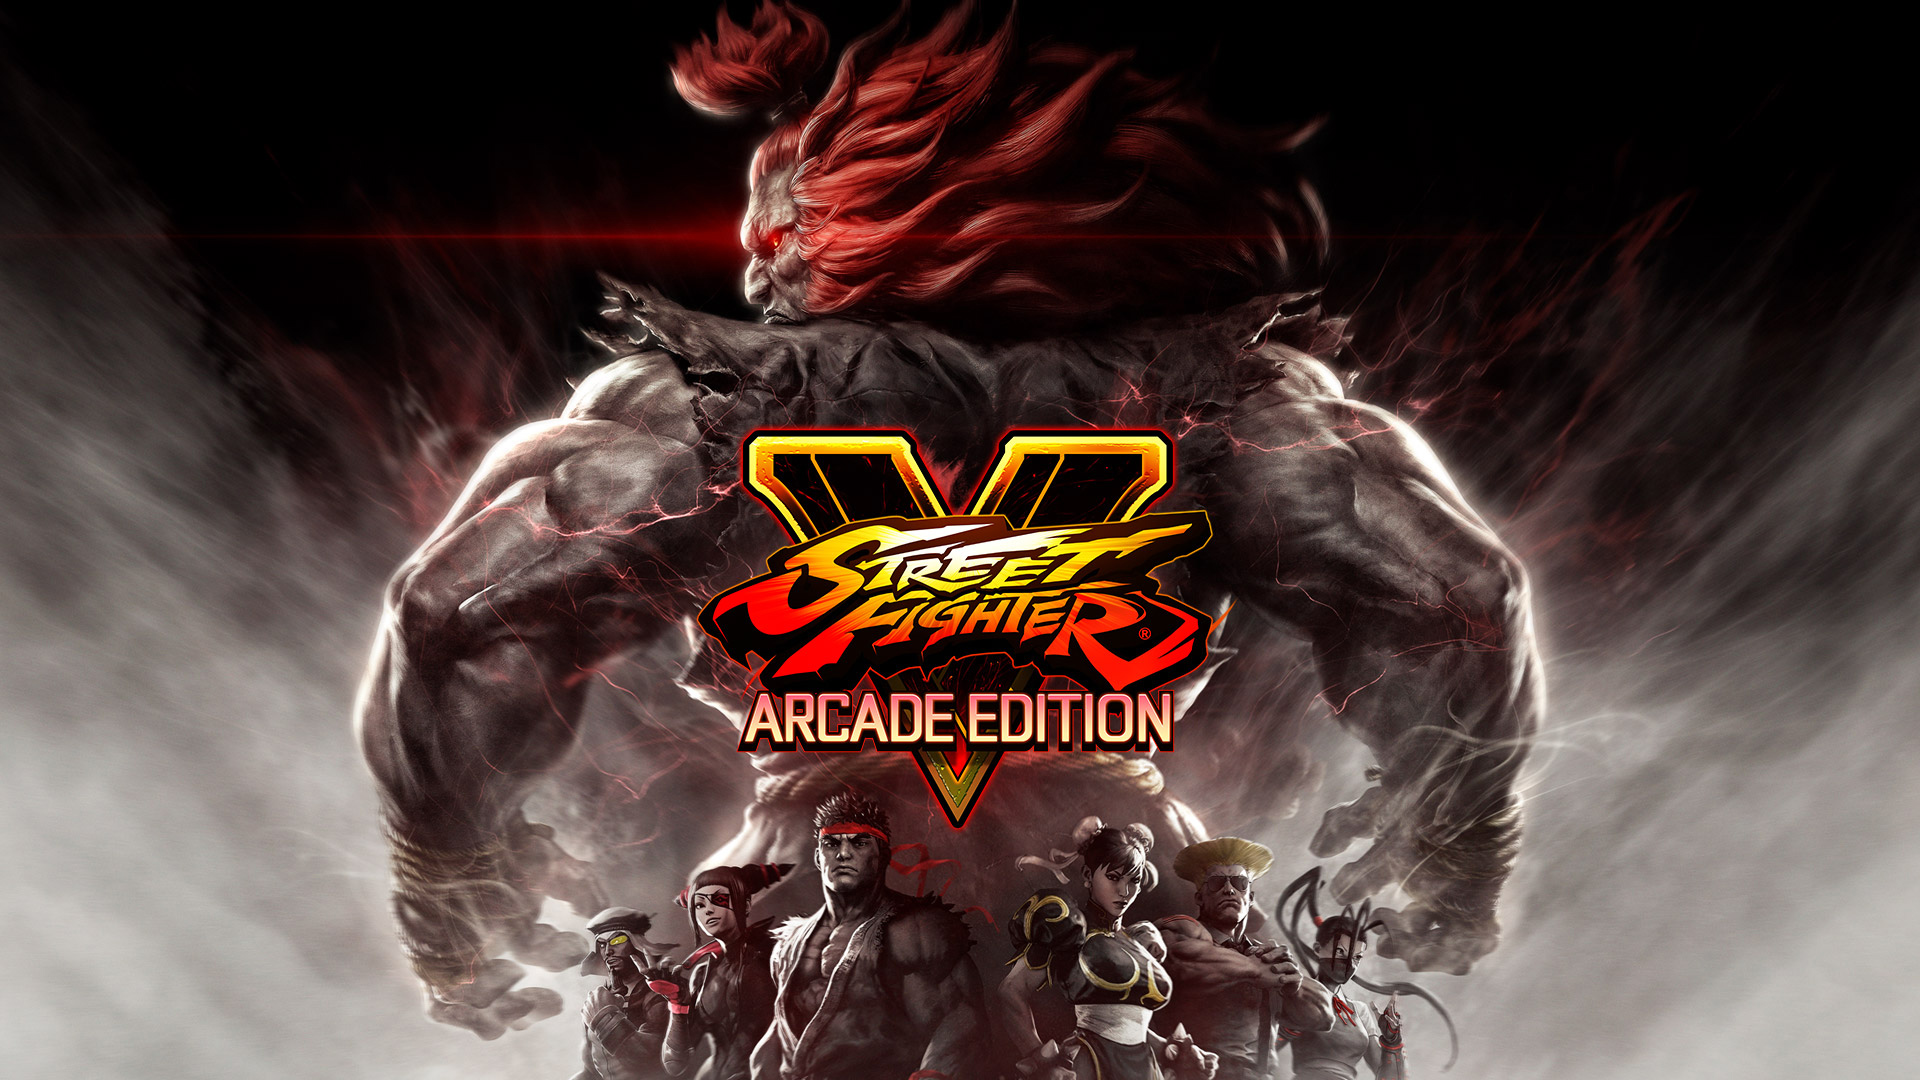 Arcade Edition Wallpaper From Street Fighter V - Street Fighter V Arcade Edition , HD Wallpaper & Backgrounds